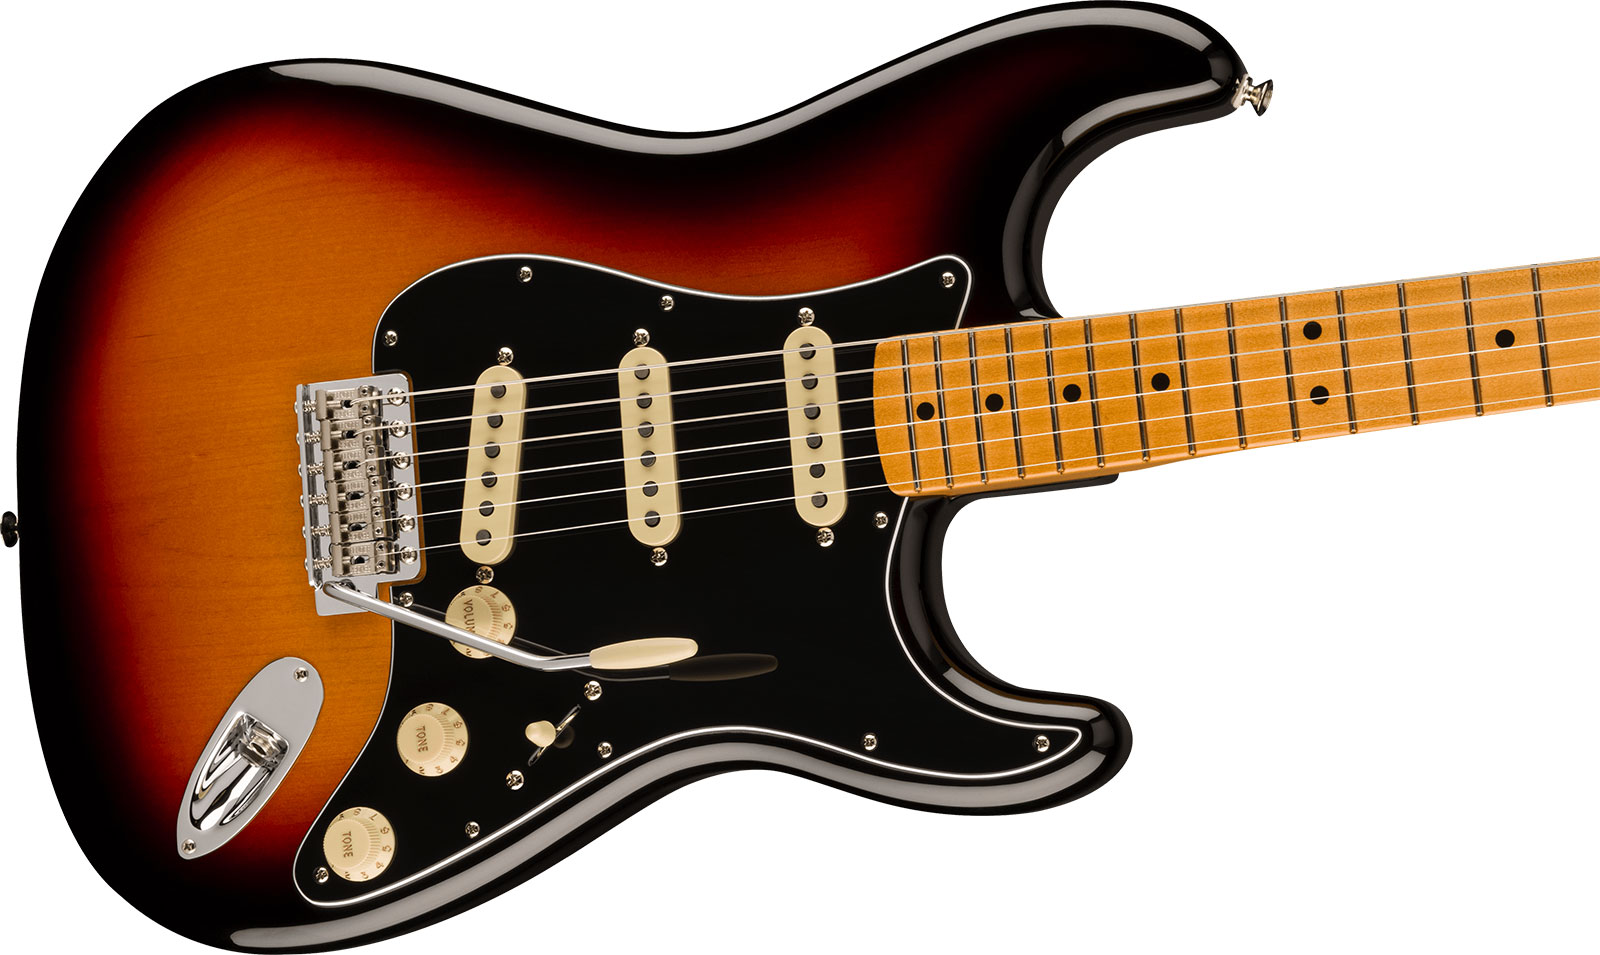 Fender Strat 70s Vintera 2 Mex 3s Trem Mn - 3-color Sunburst - Str shape electric guitar - Variation 2